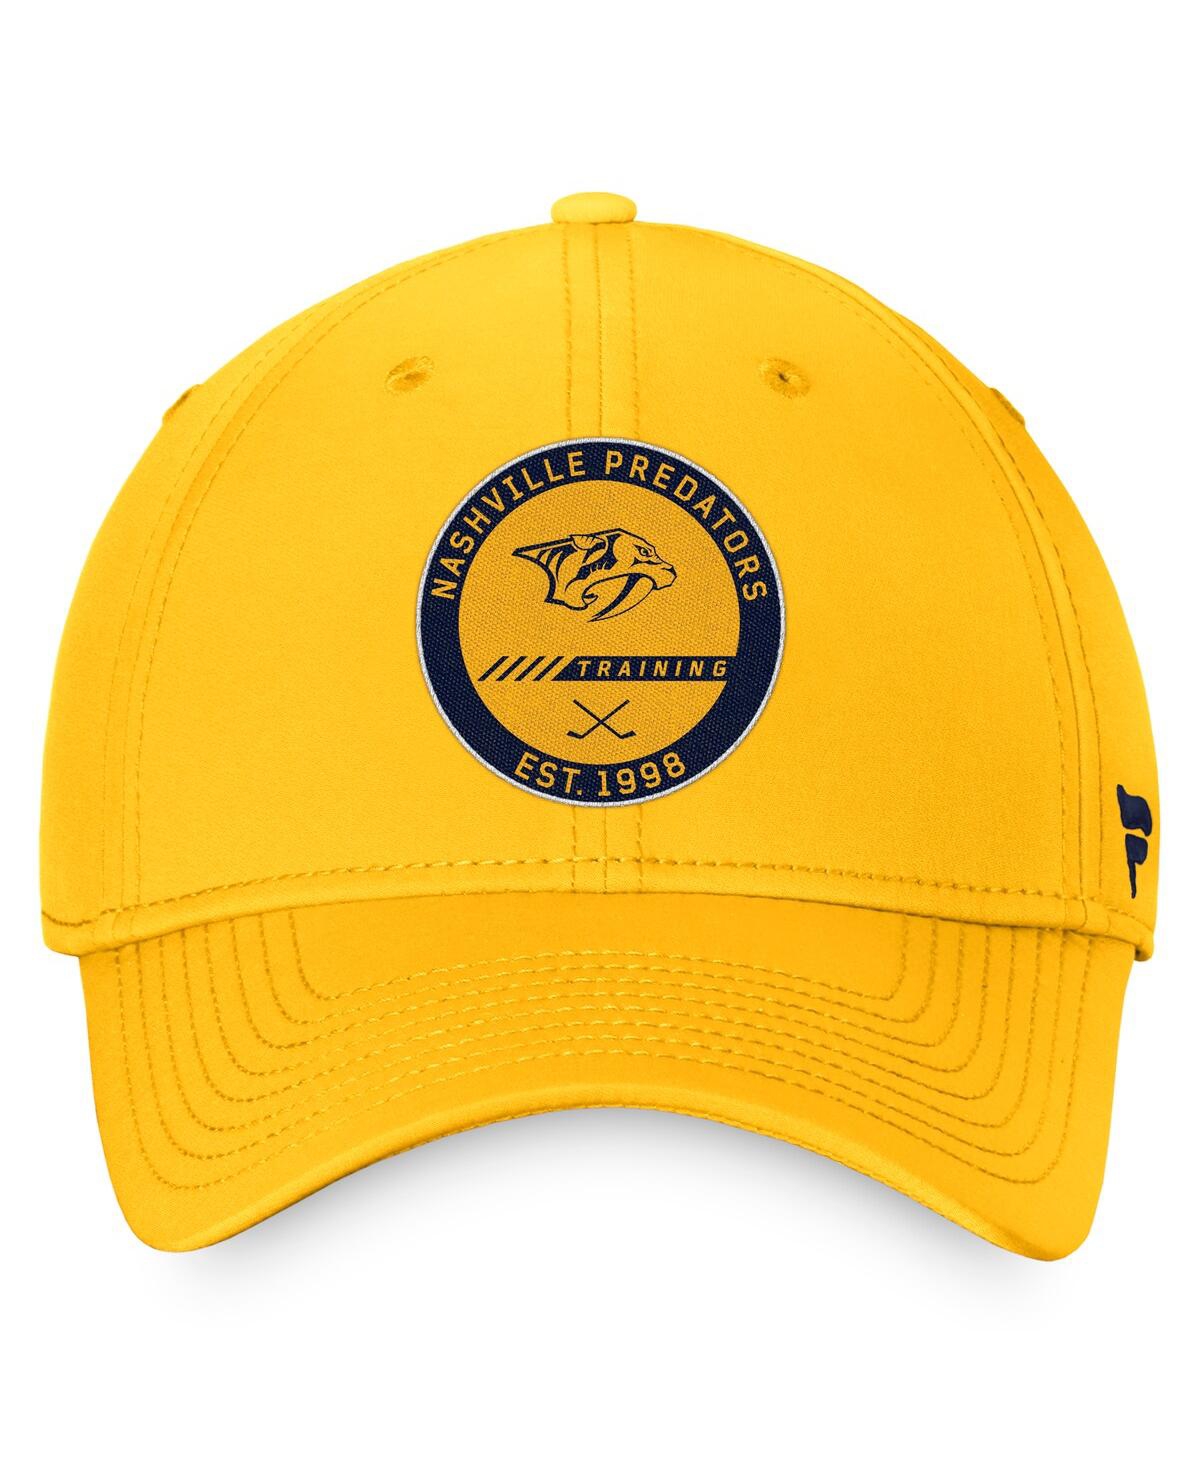 Shop Fanatics Men's  Gold Nashville Predators Authentic Pro Training Camp Flex Hat